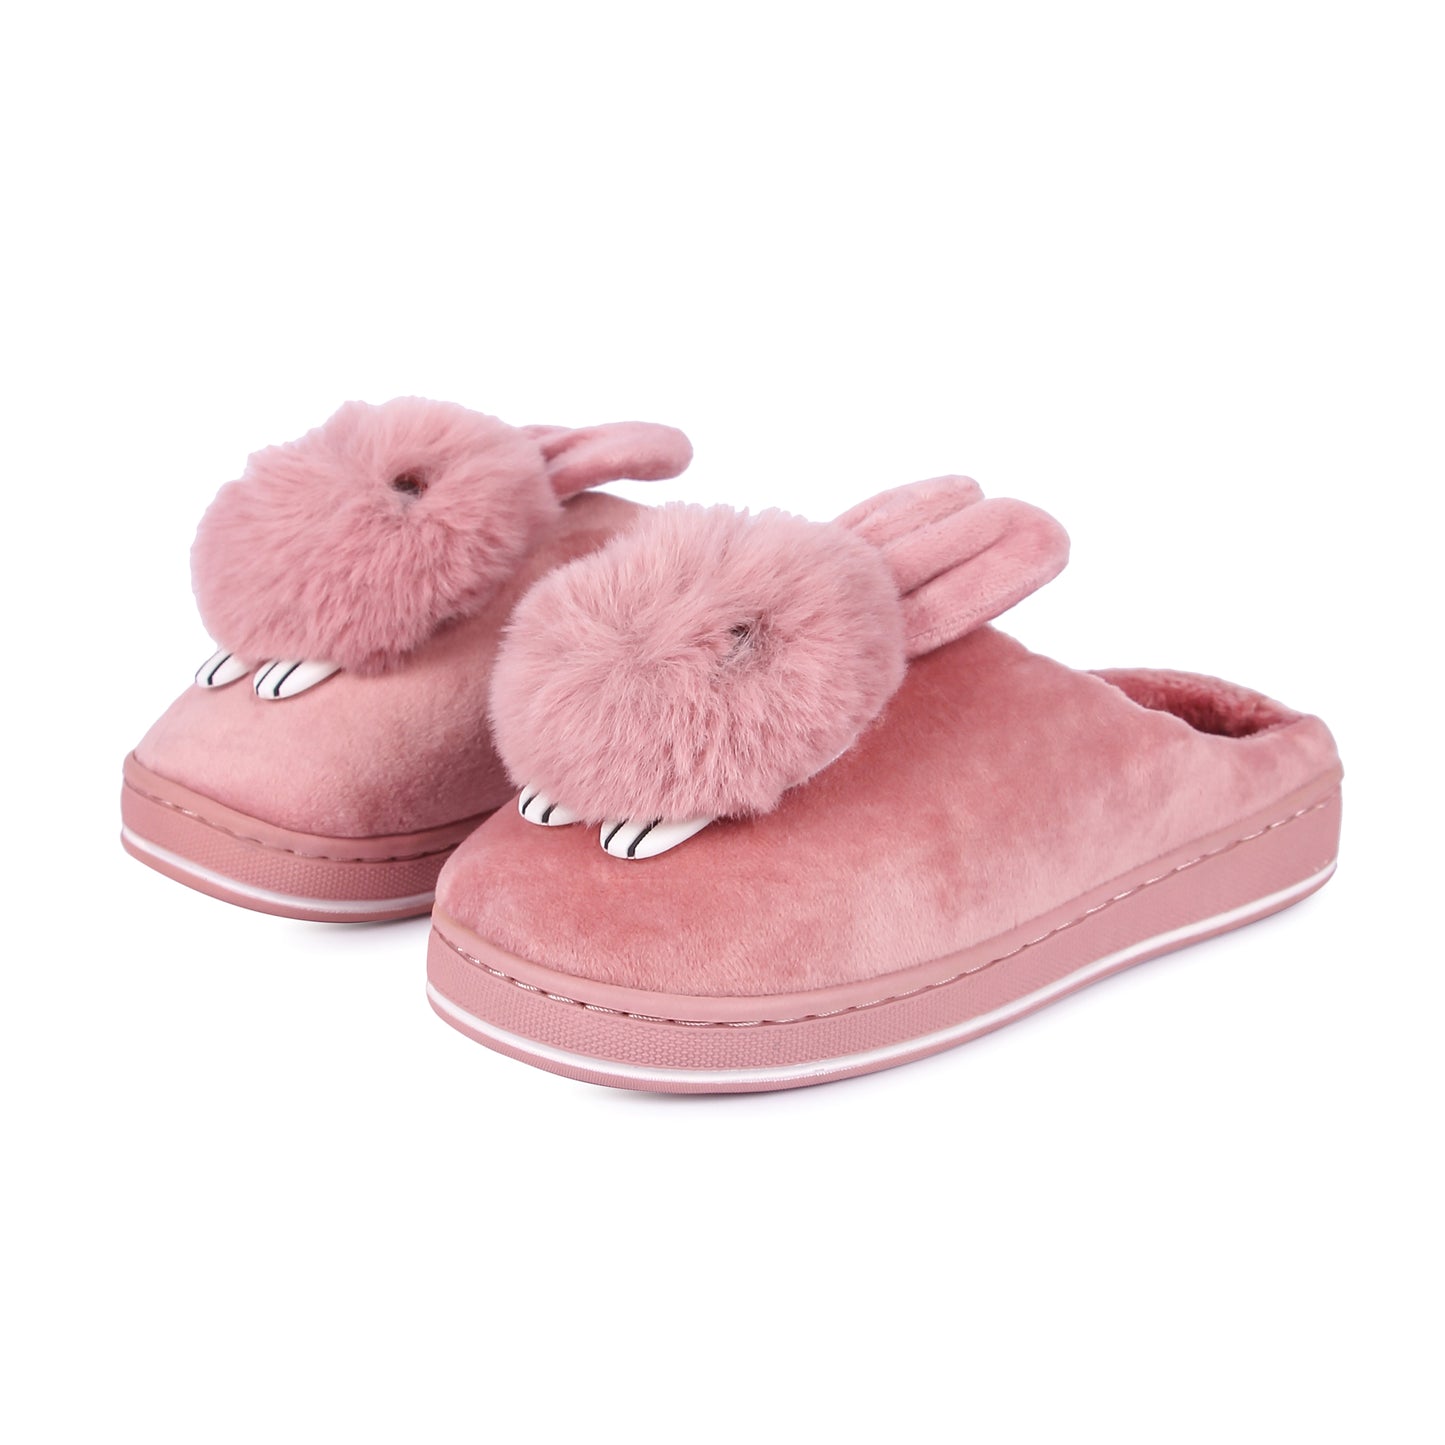 Brauch Women's Pink Cute Rabbit Winter Slippers